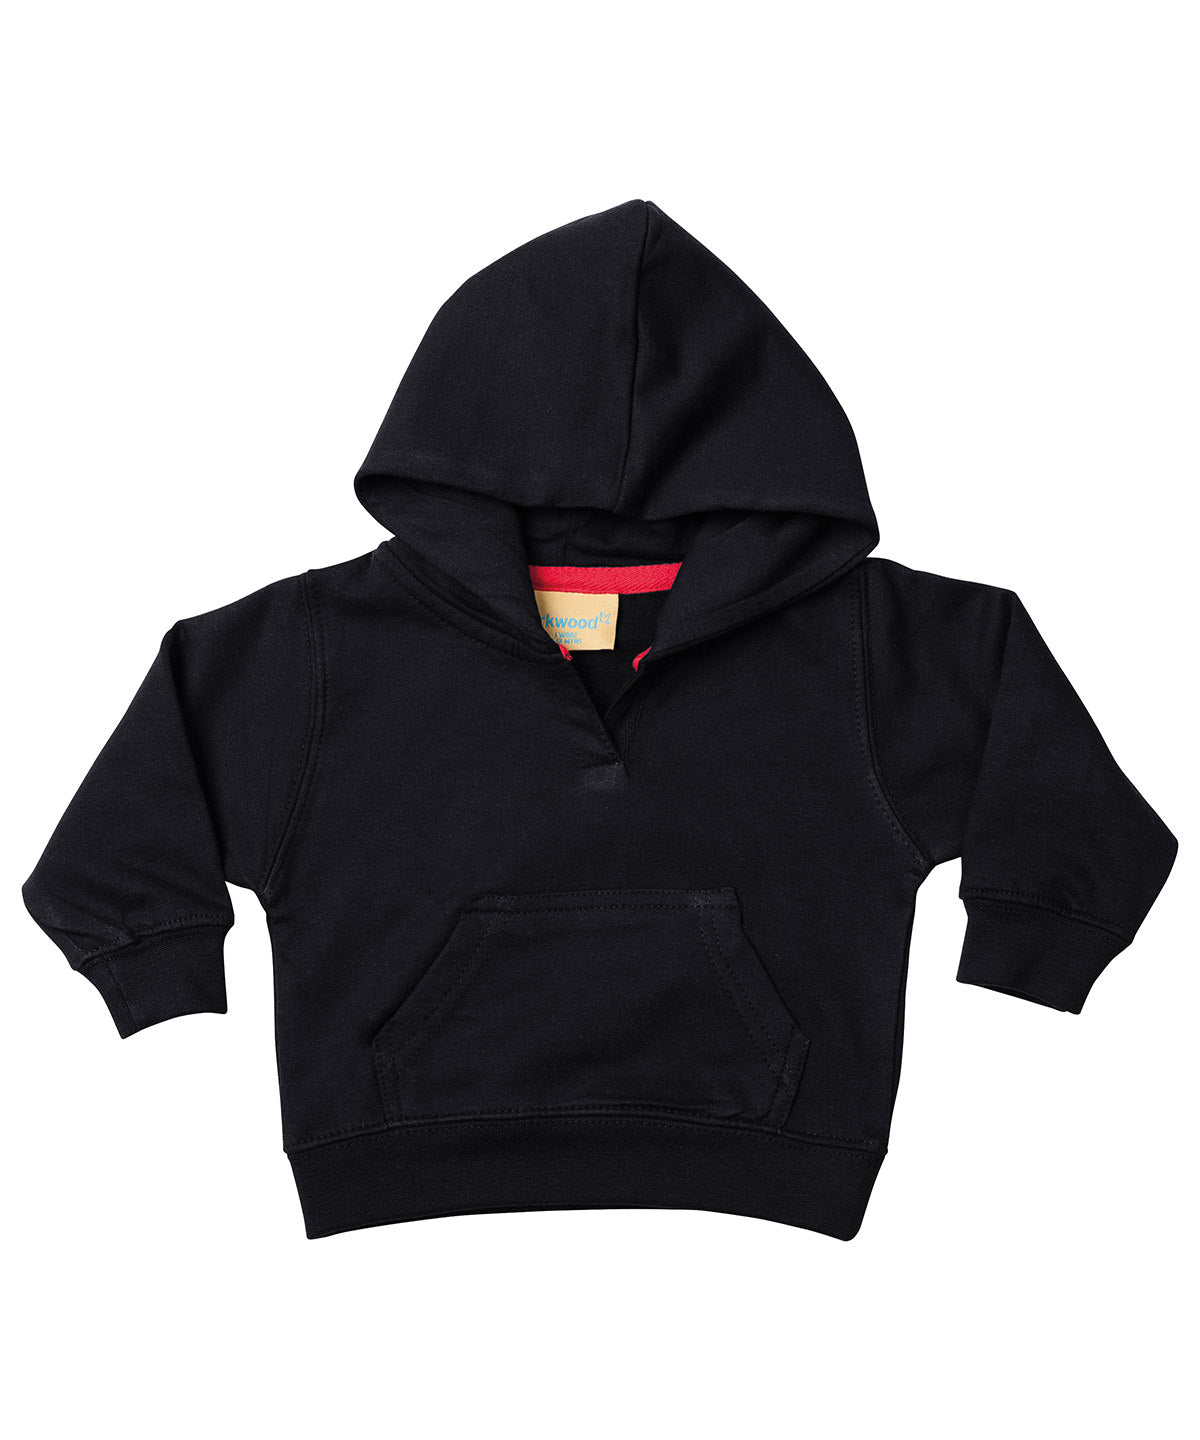 Personalised Hoodies - Black Larkwood Toddler hooded sweatshirt with kangaroo pocket